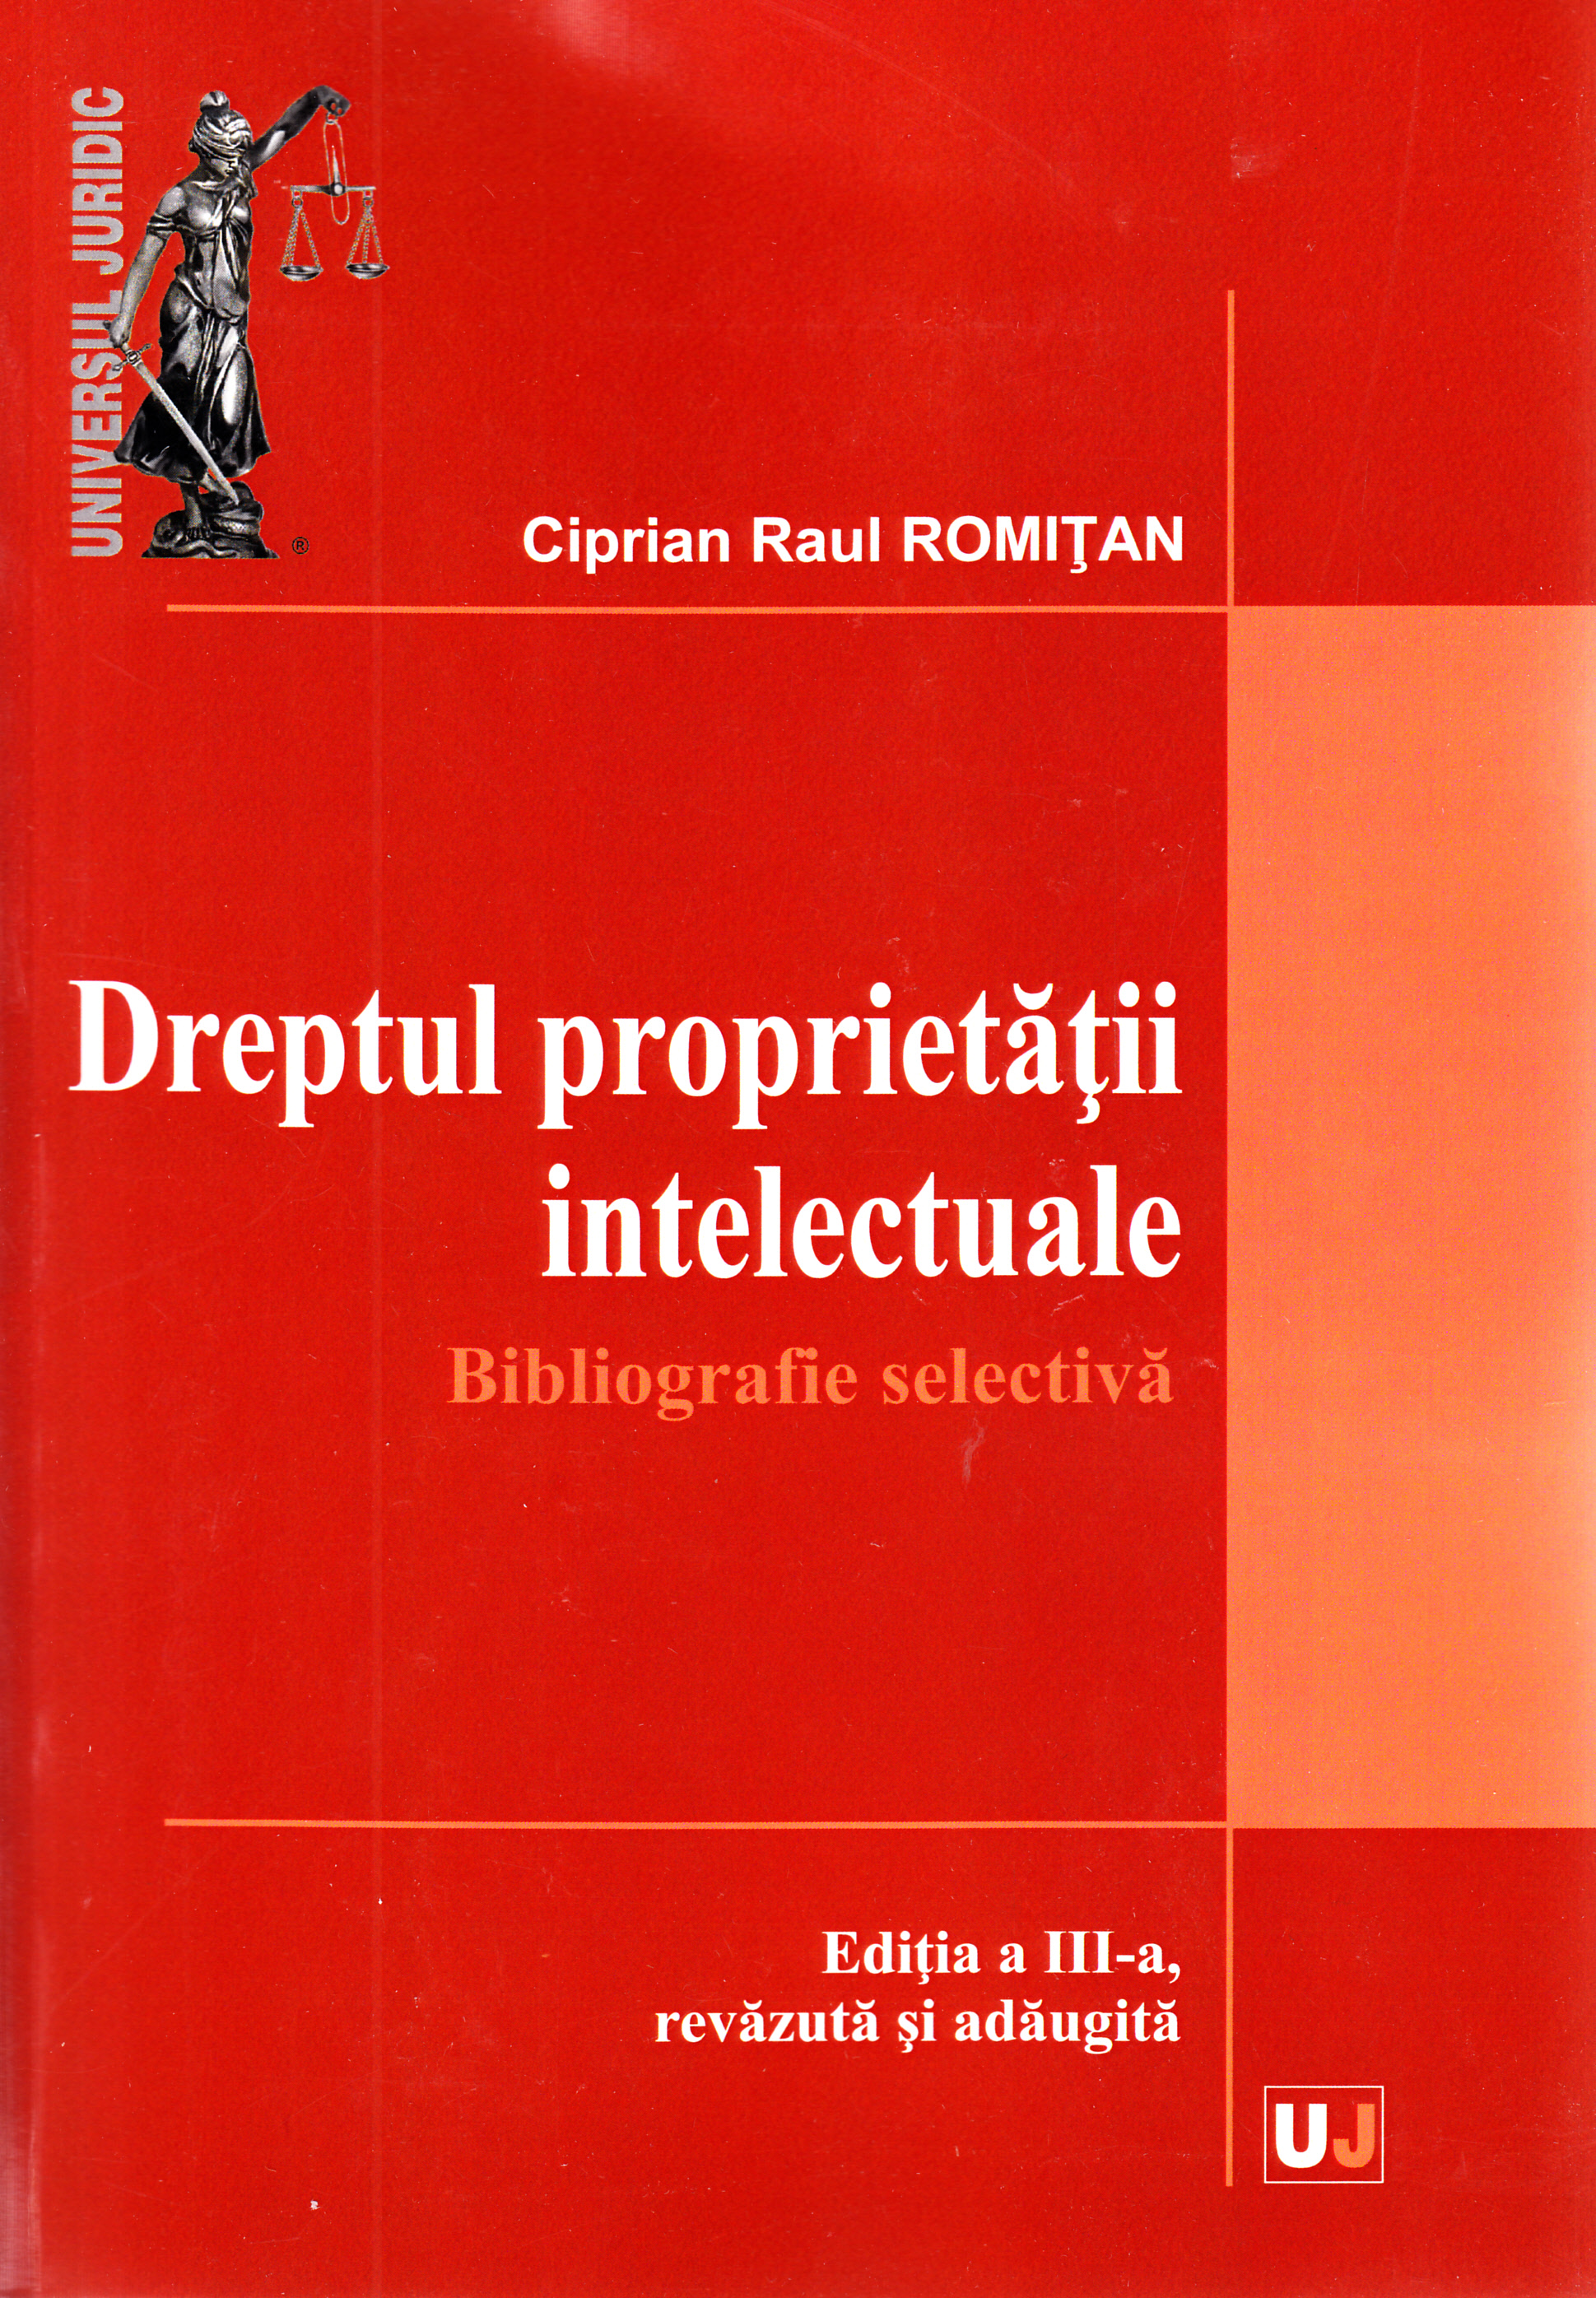 Dreptul proprietatii intelectuale - Ciprian Raul Romitan